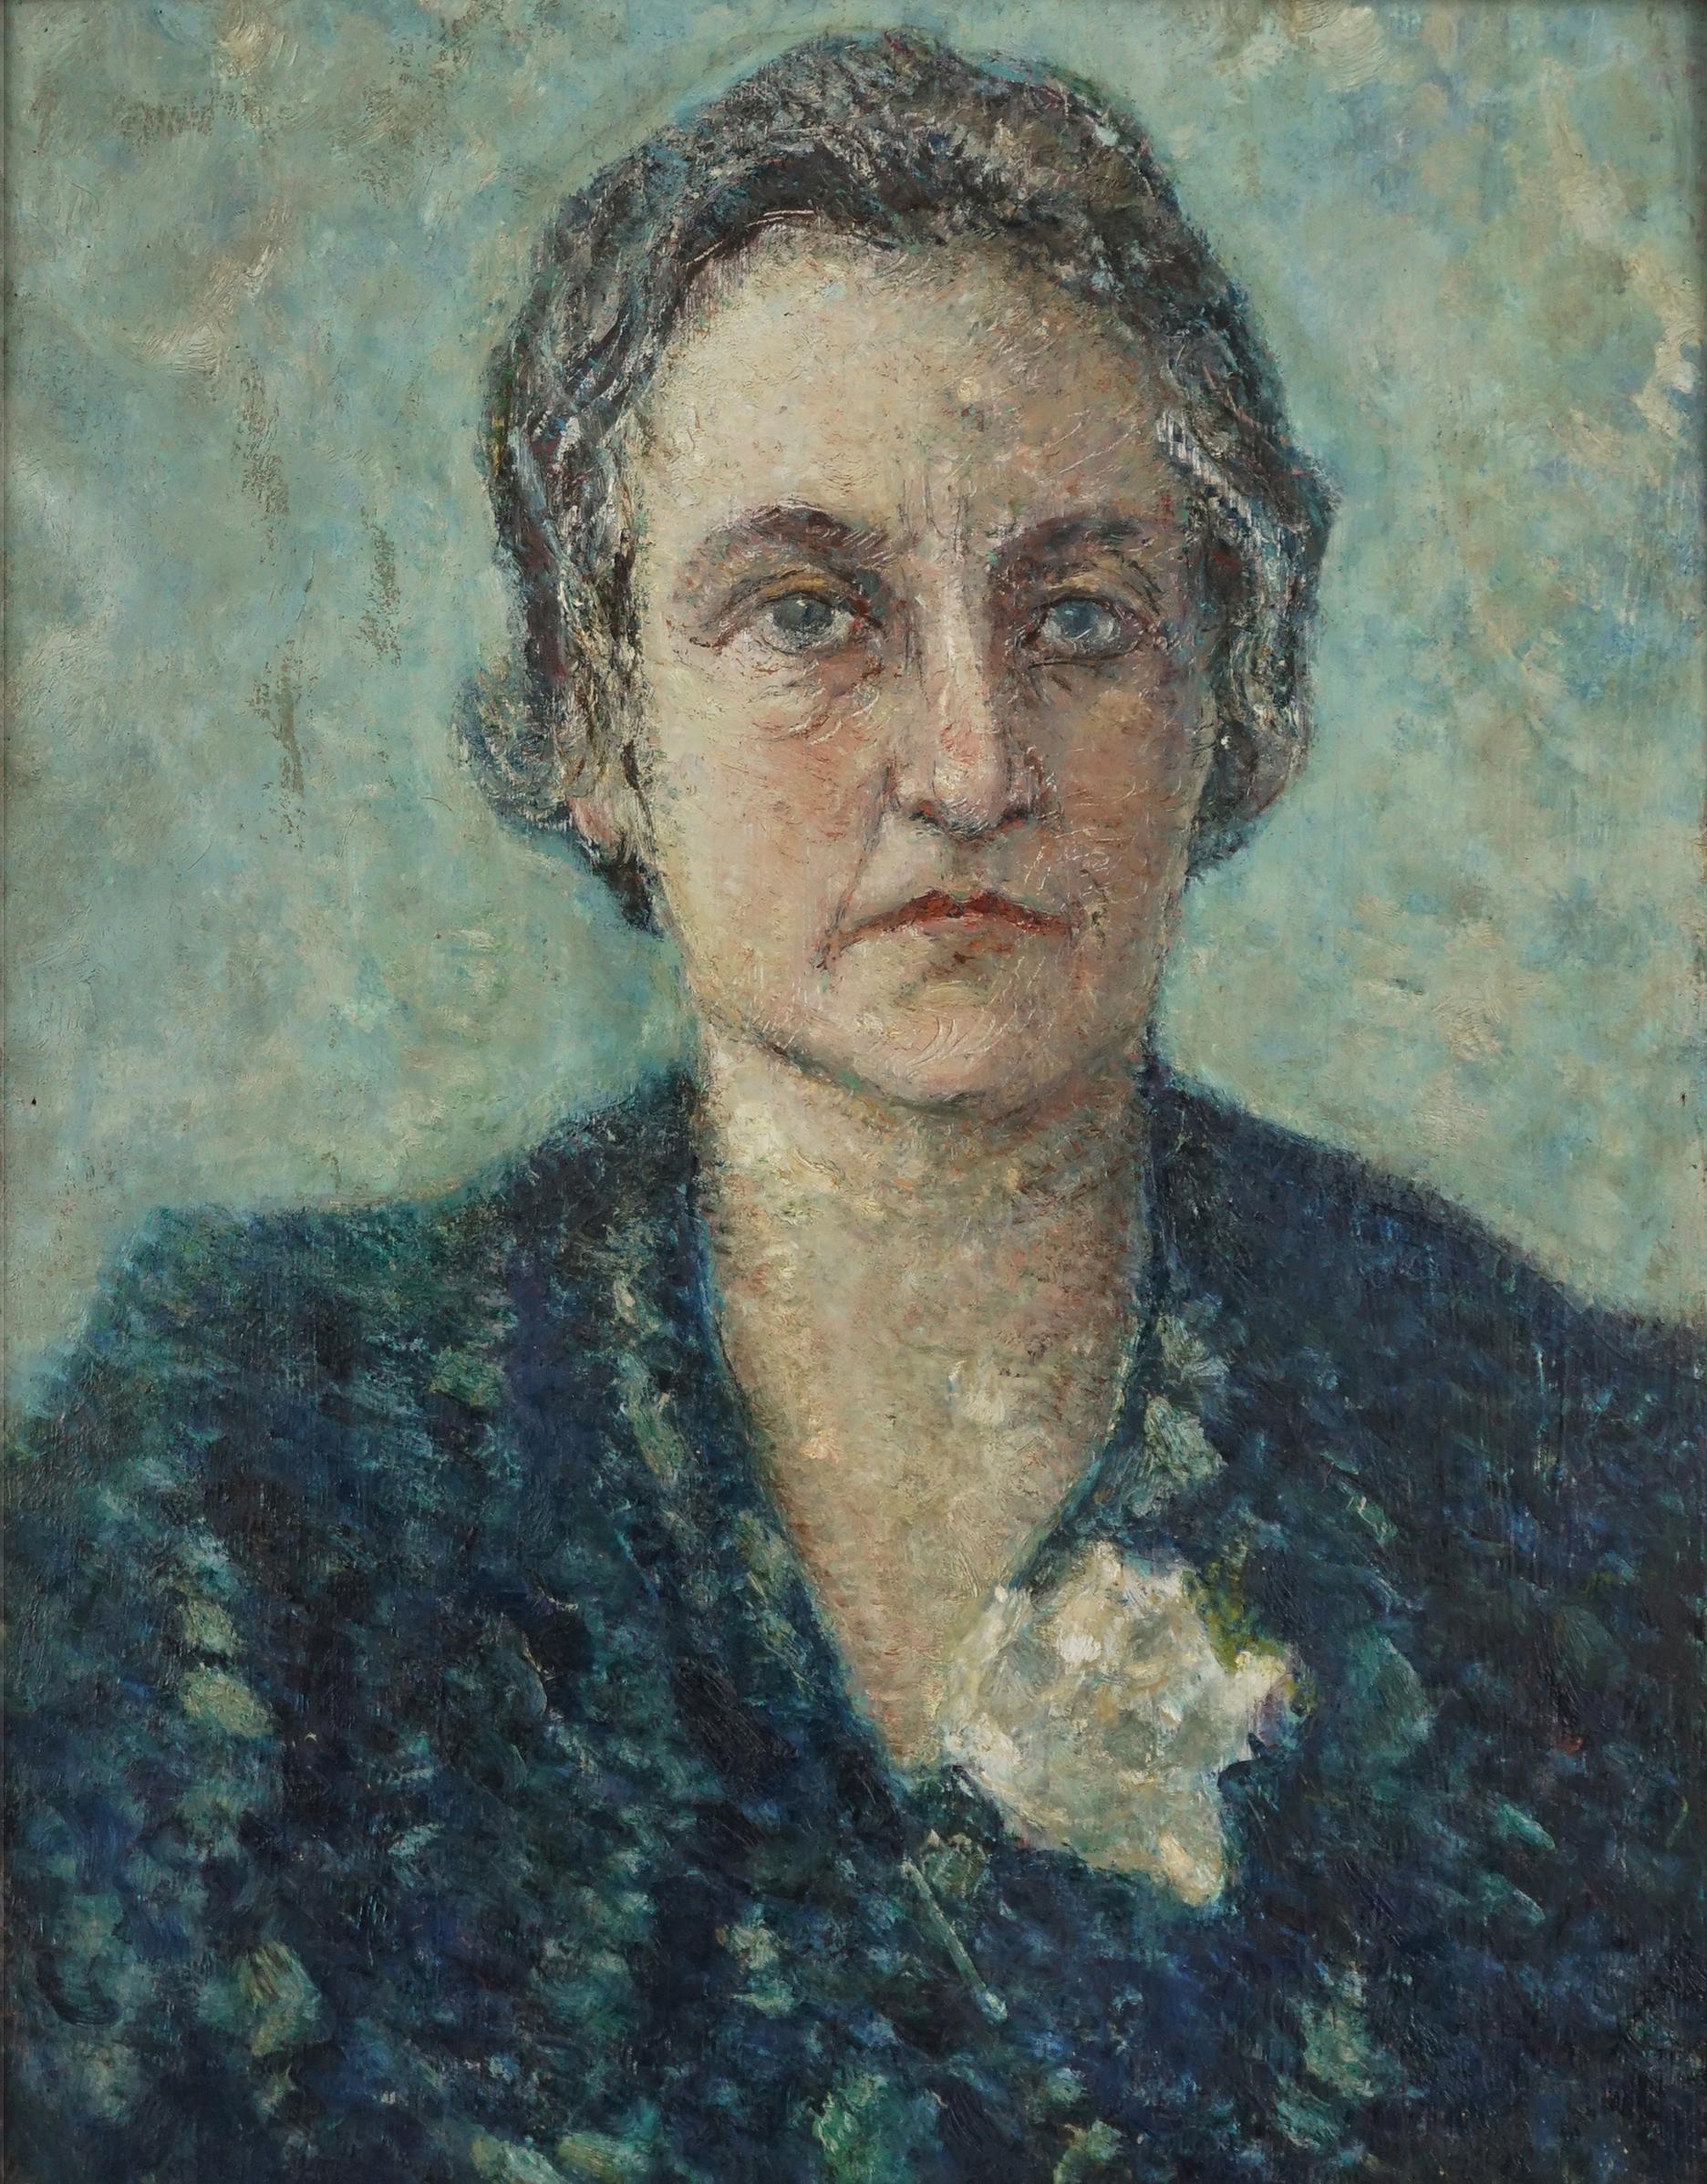 Portrait de Nonna dans le style divisionniste des années 1950 -- peinture à l'huile sur panneau - Painting de Raul Viviani